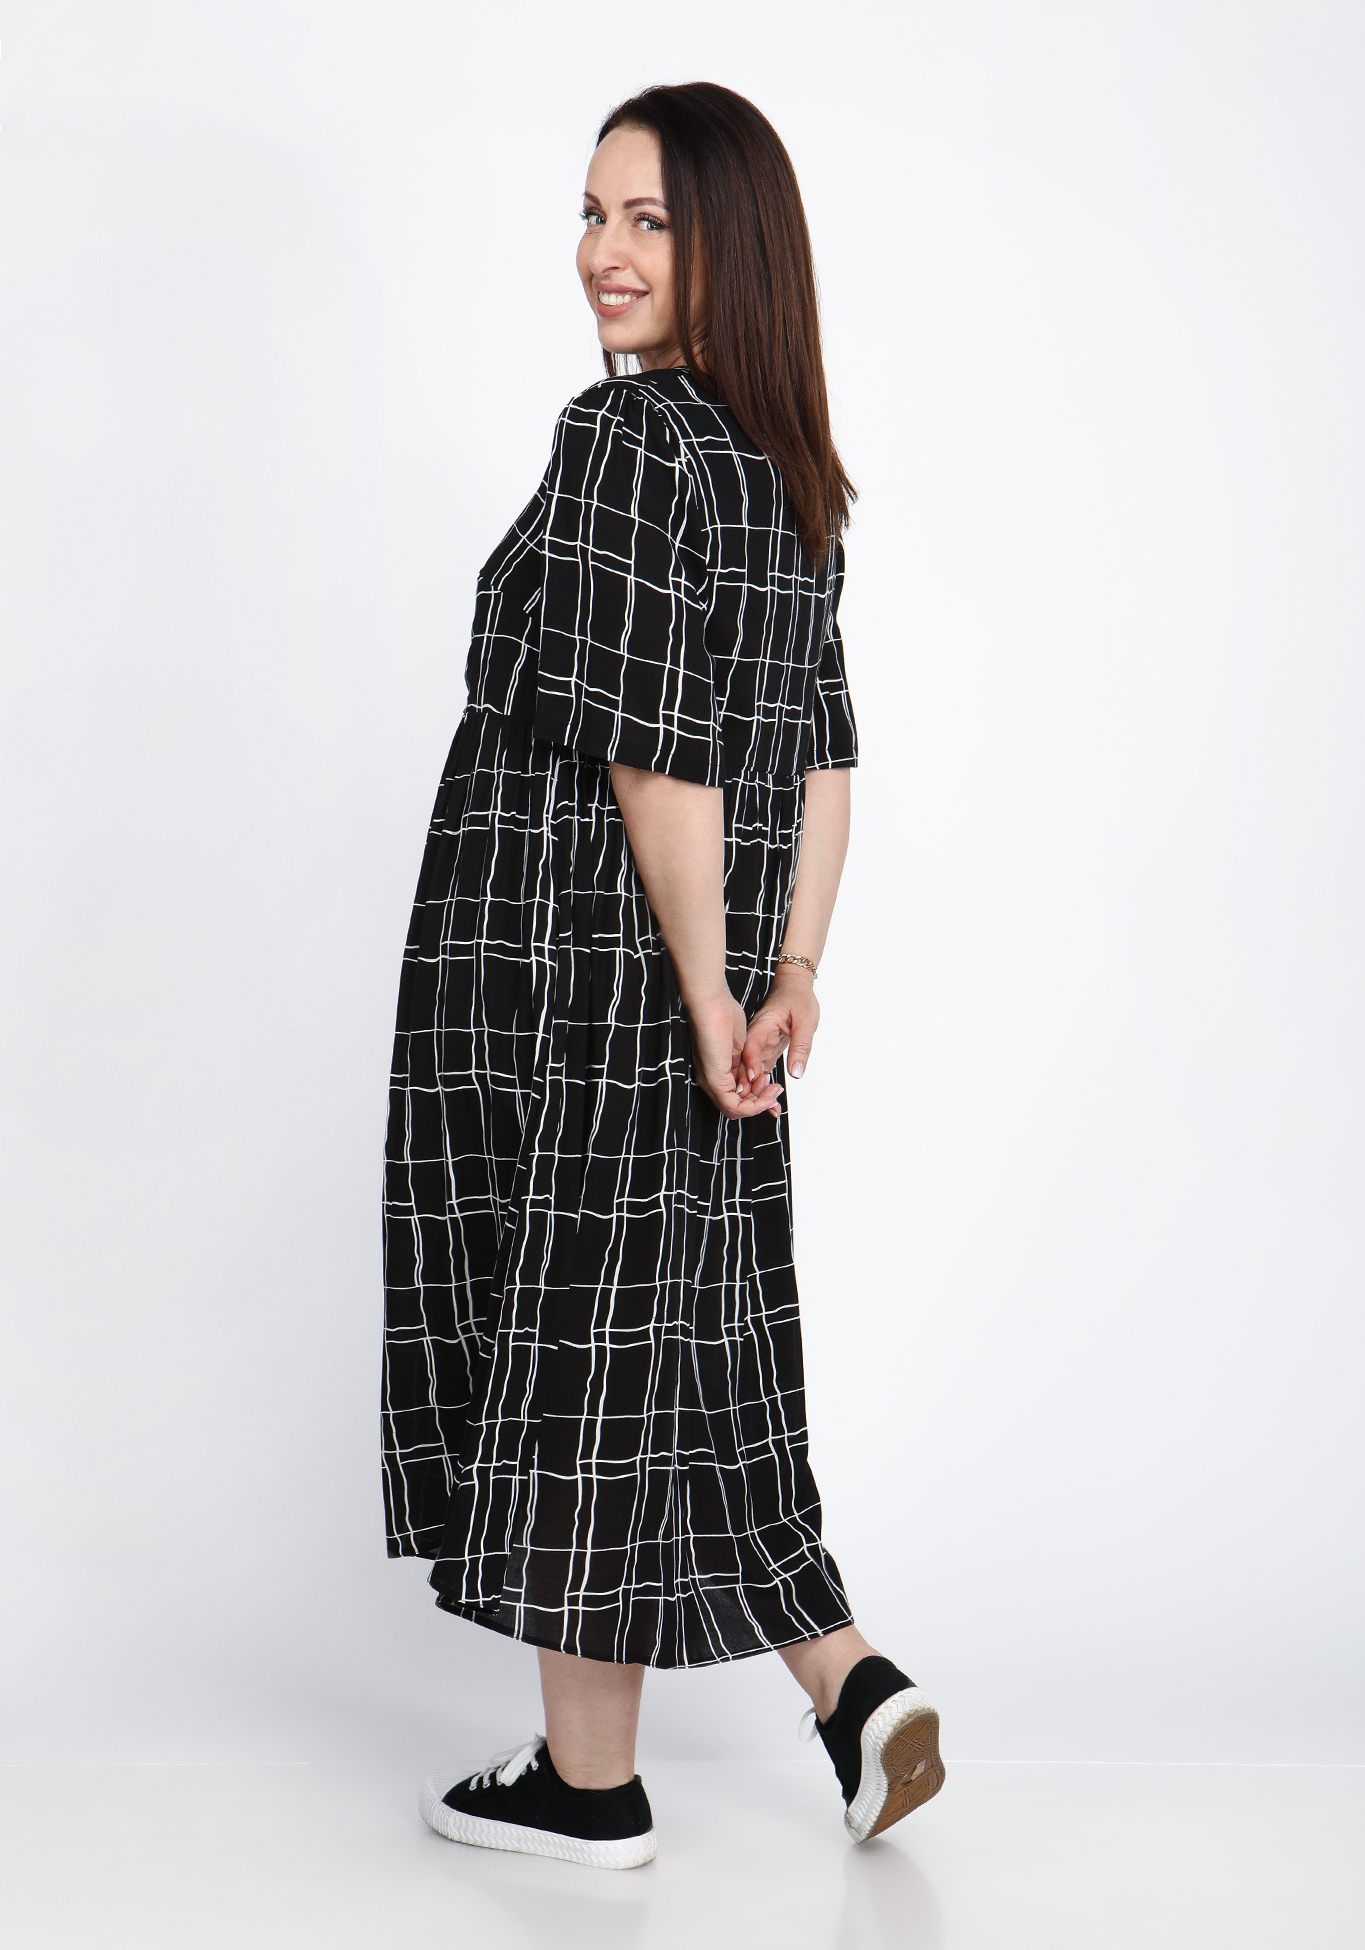 Платье свободного кроя с подкладом Alex Voice Collection, размер 50, цвет черный свободная модель - фото 3